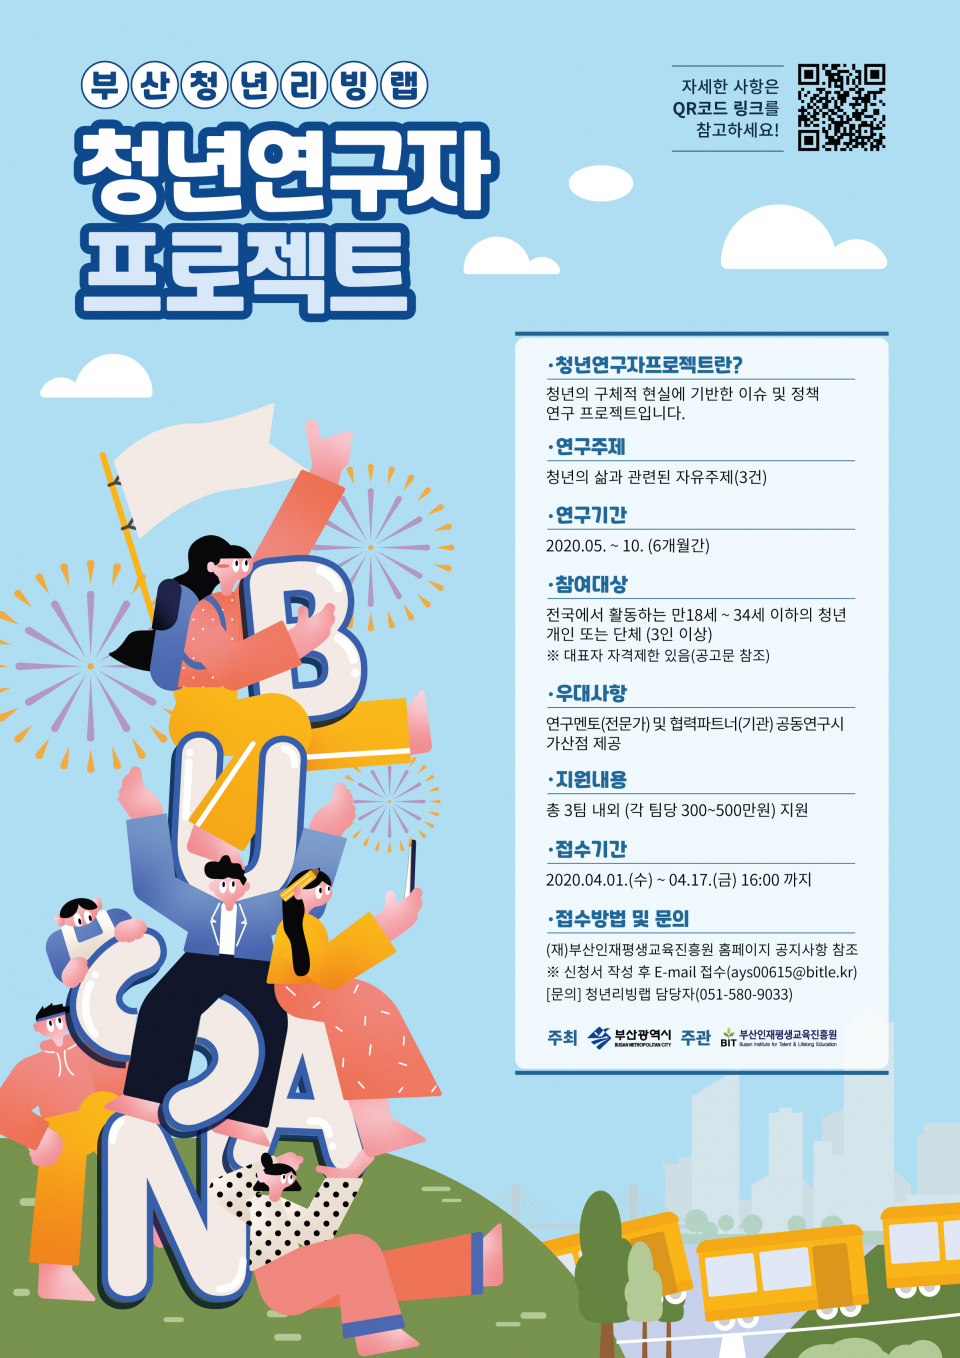 2020년 부산청년리빙랩 사업 참가팀 모집 홍보